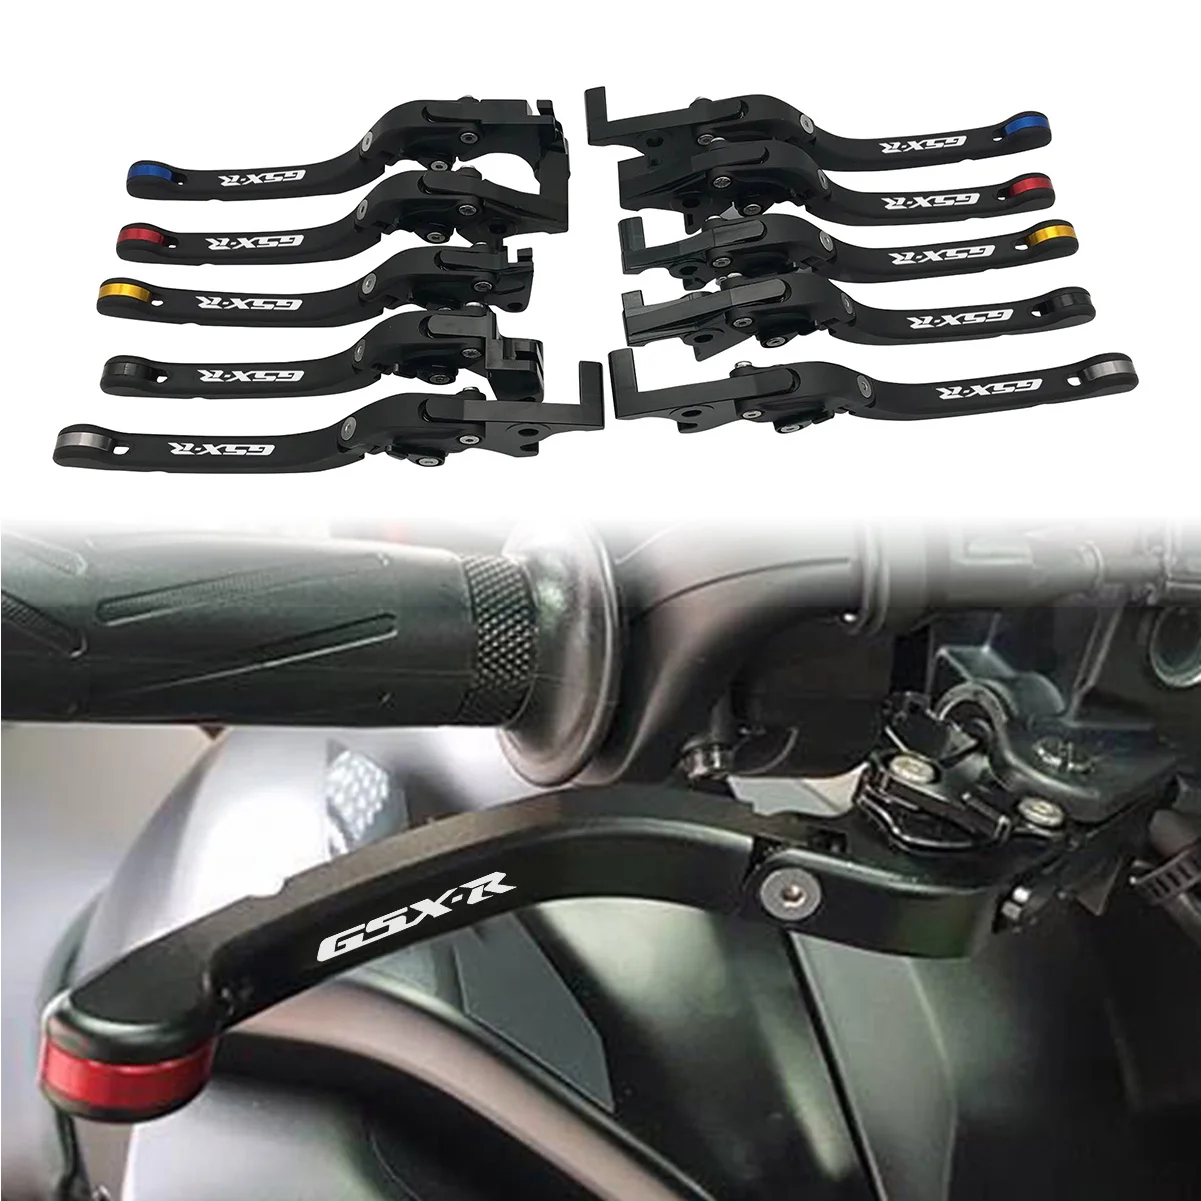 

GSXR LOGO Motorcycle CNC Foldable Brake Clutch Hand Levers For Suzuki GSXR600 GSXR750 1997-2003 GSXR1000 2001-2004 GSR600 06-11